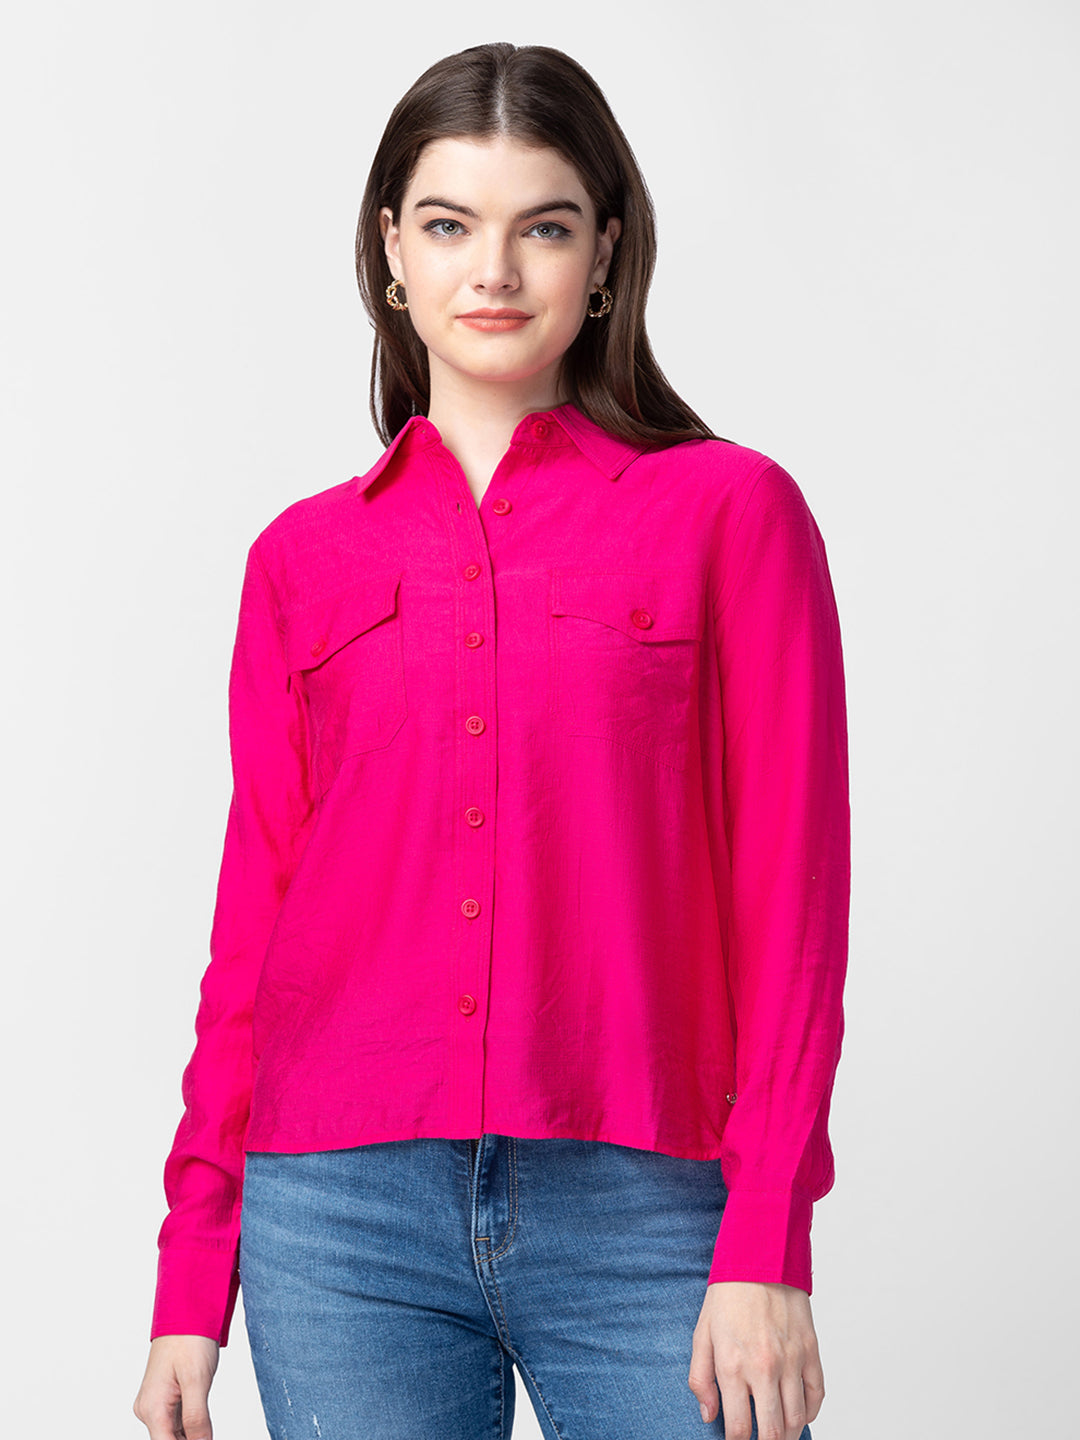 Spykar Women Fuschia Pink Cotton Regular Fit Plain Shirts